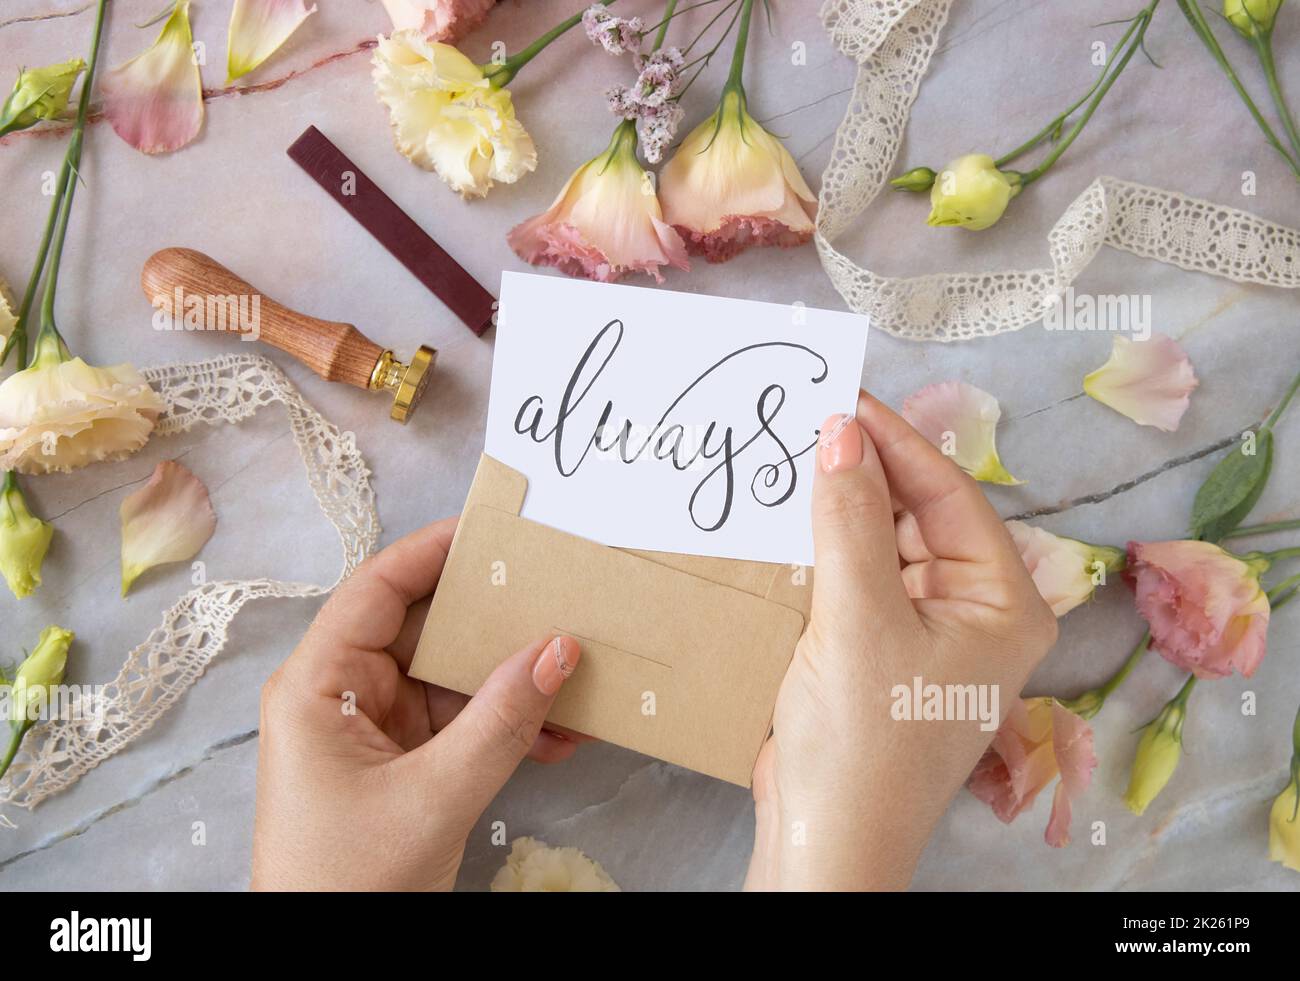 Mains avec la carte TOUJOURS à l'intérieur de l'enveloppe près de fleurs roses sur une table en marbre Banque D'Images